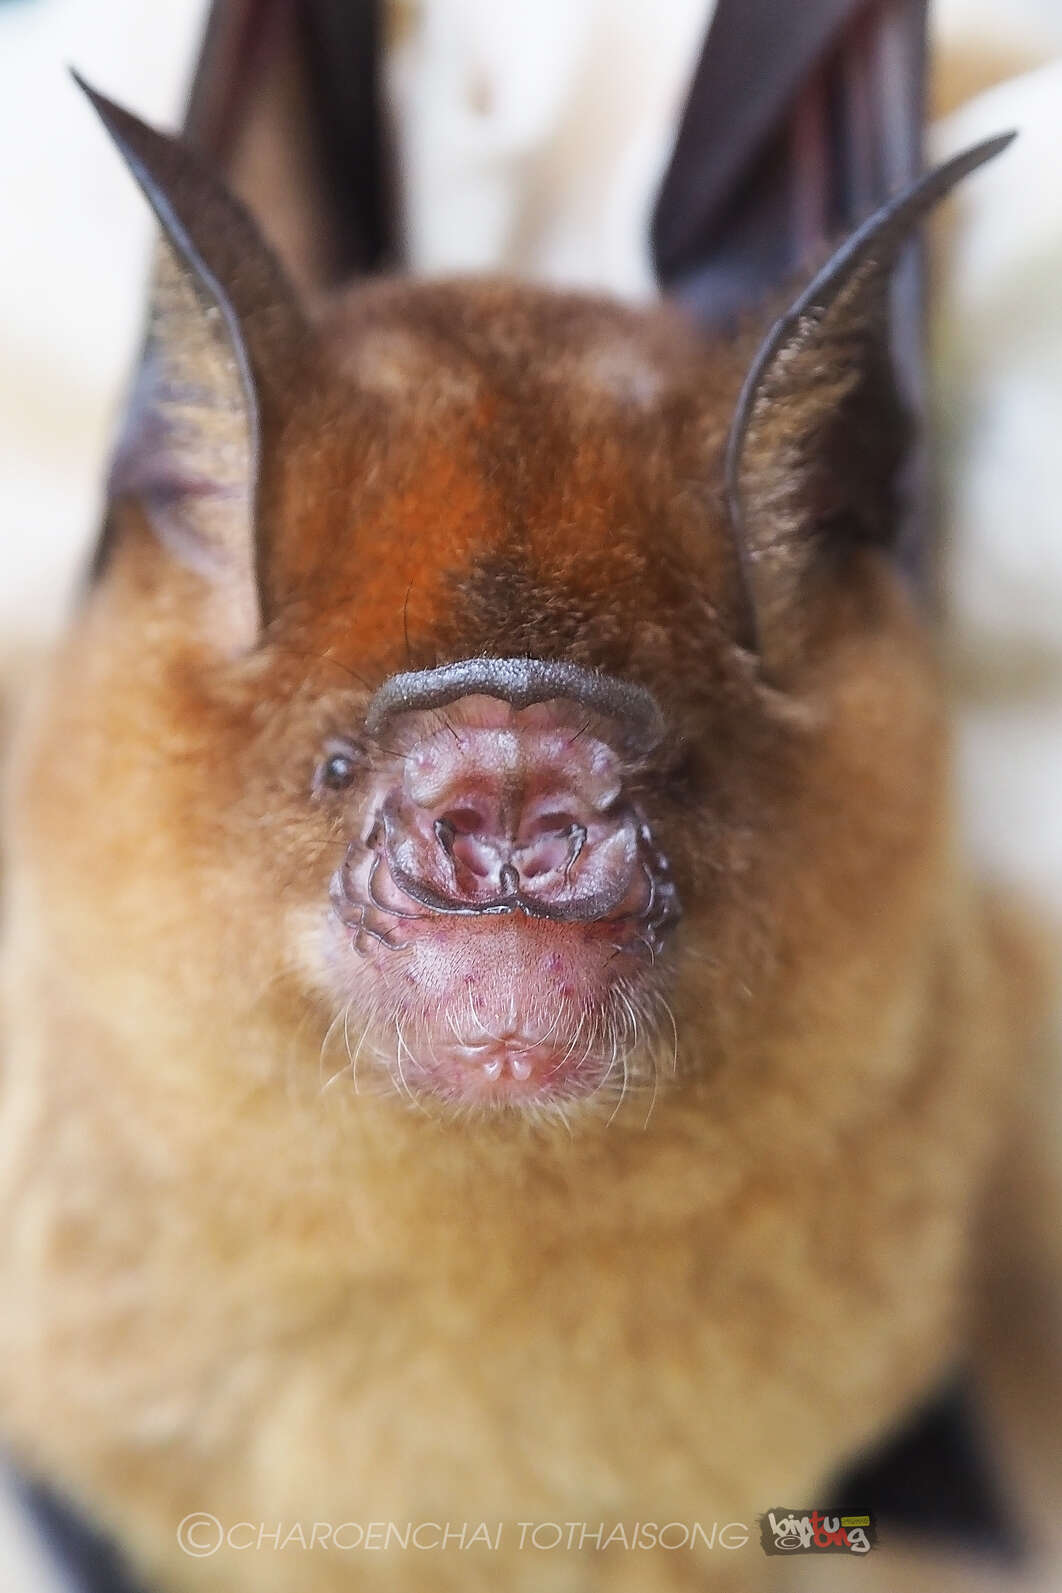 Image of Horsfield's Leaf-nosed Bat